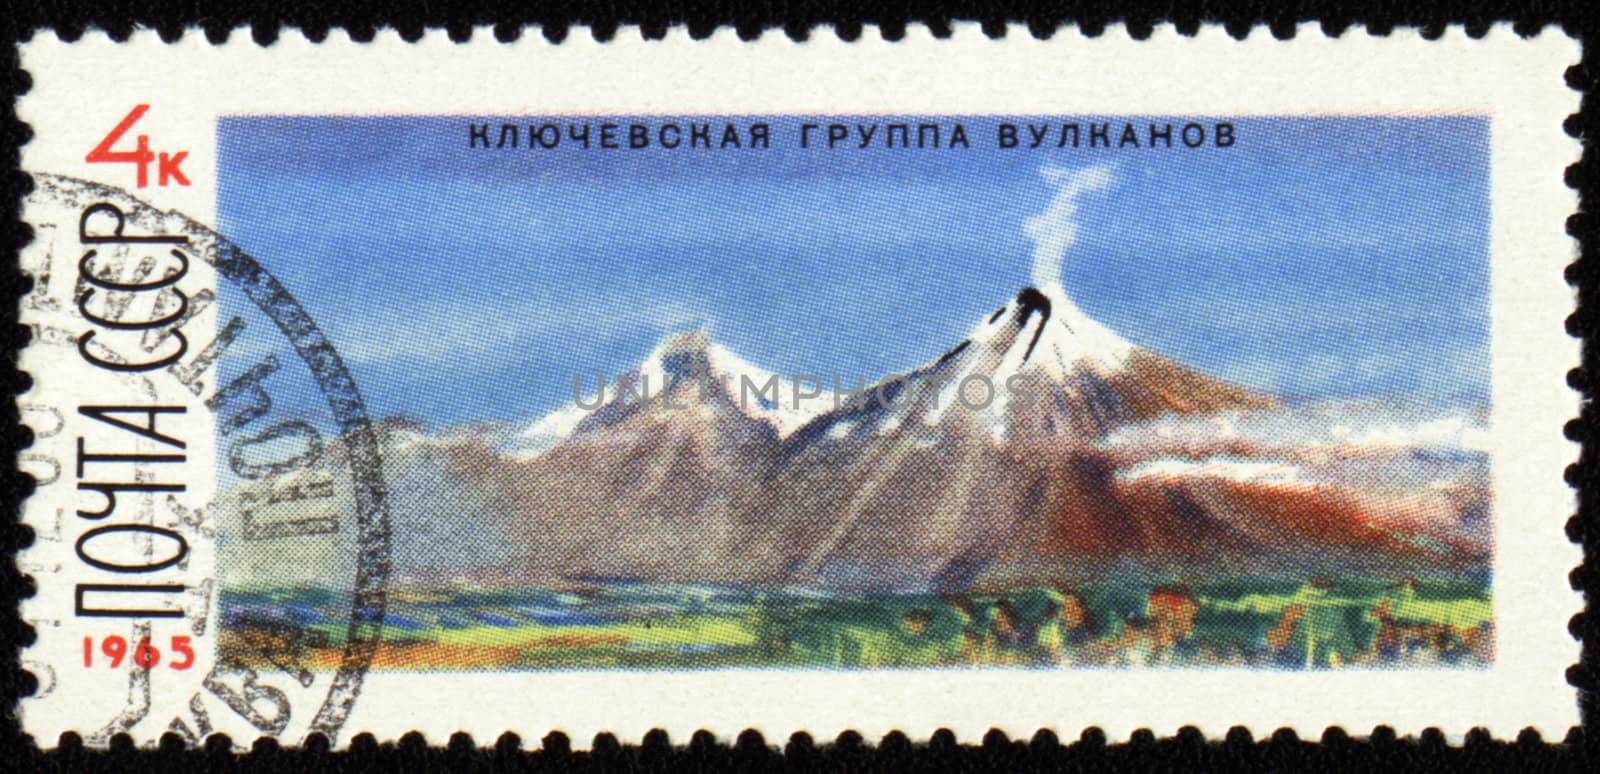 Kluchevskoj volcano in Kamchatka on post stamp by wander